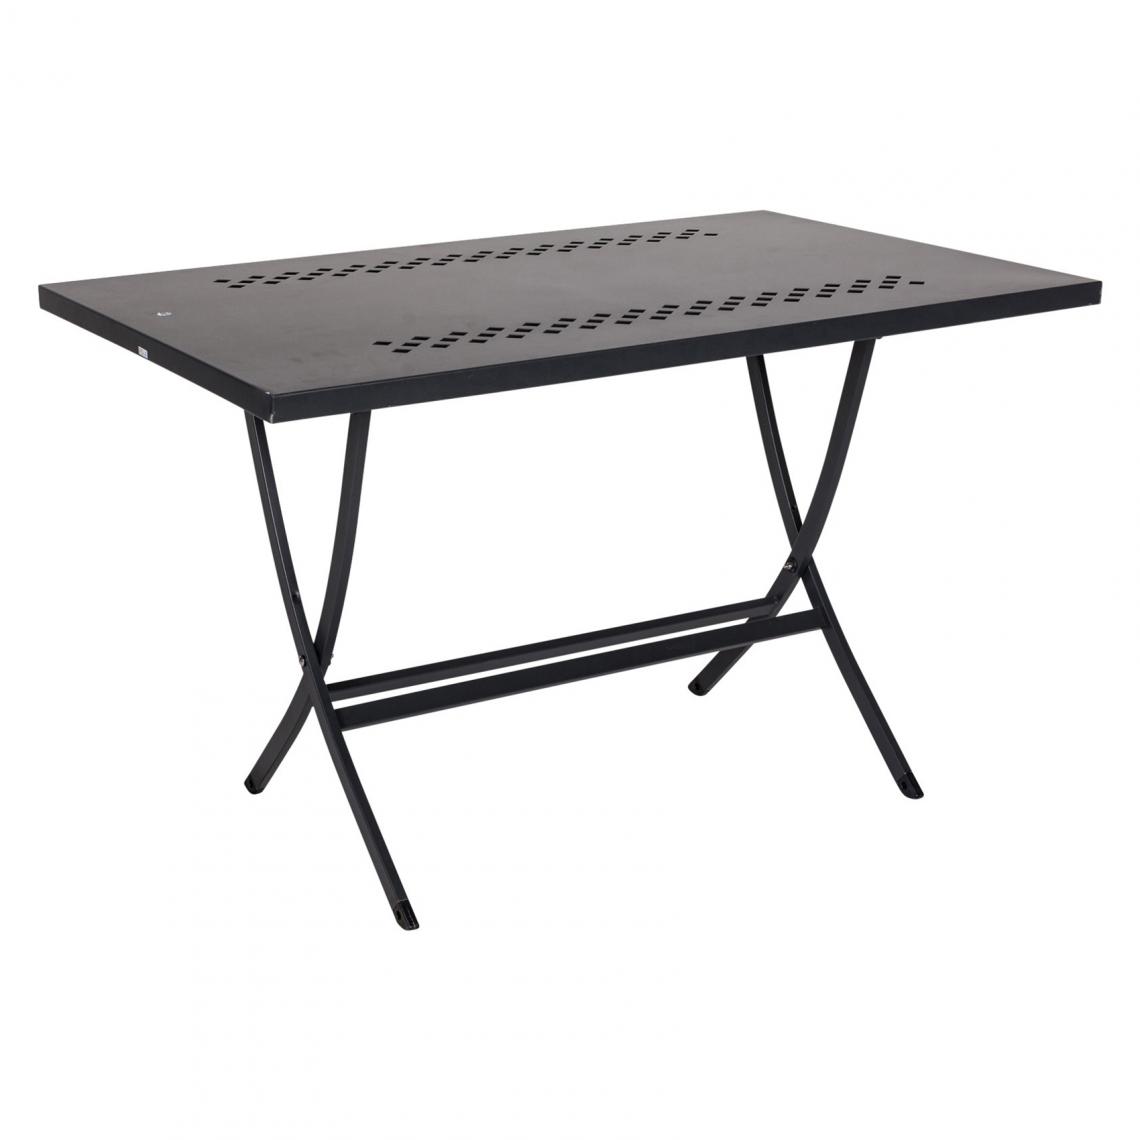 Alter - Table d'extérieur pliante, coloris noir, 120 x 80 x h75 cm - Tables à manger